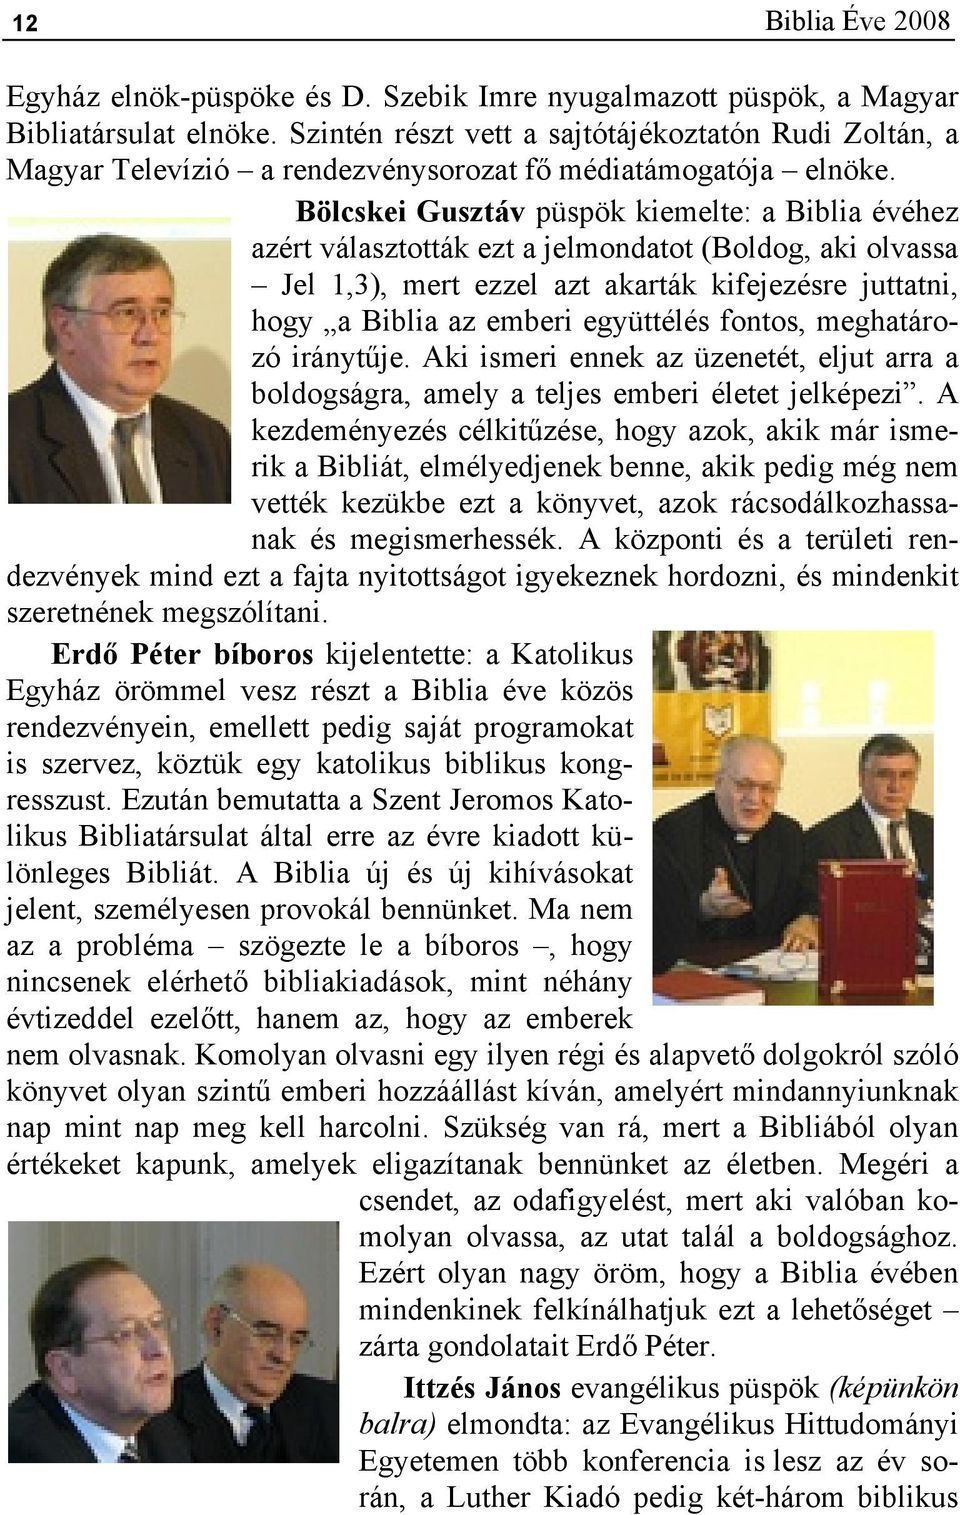 Bölcskei Gusztáv püspök kiemelte: a Biblia évéhez azért választották ezt a jelmondatot (Boldog, aki olvassa Jel 1,3), mert ezzel azt akarták kifejezésre juttatni, hogy a Biblia az emberi együttélés